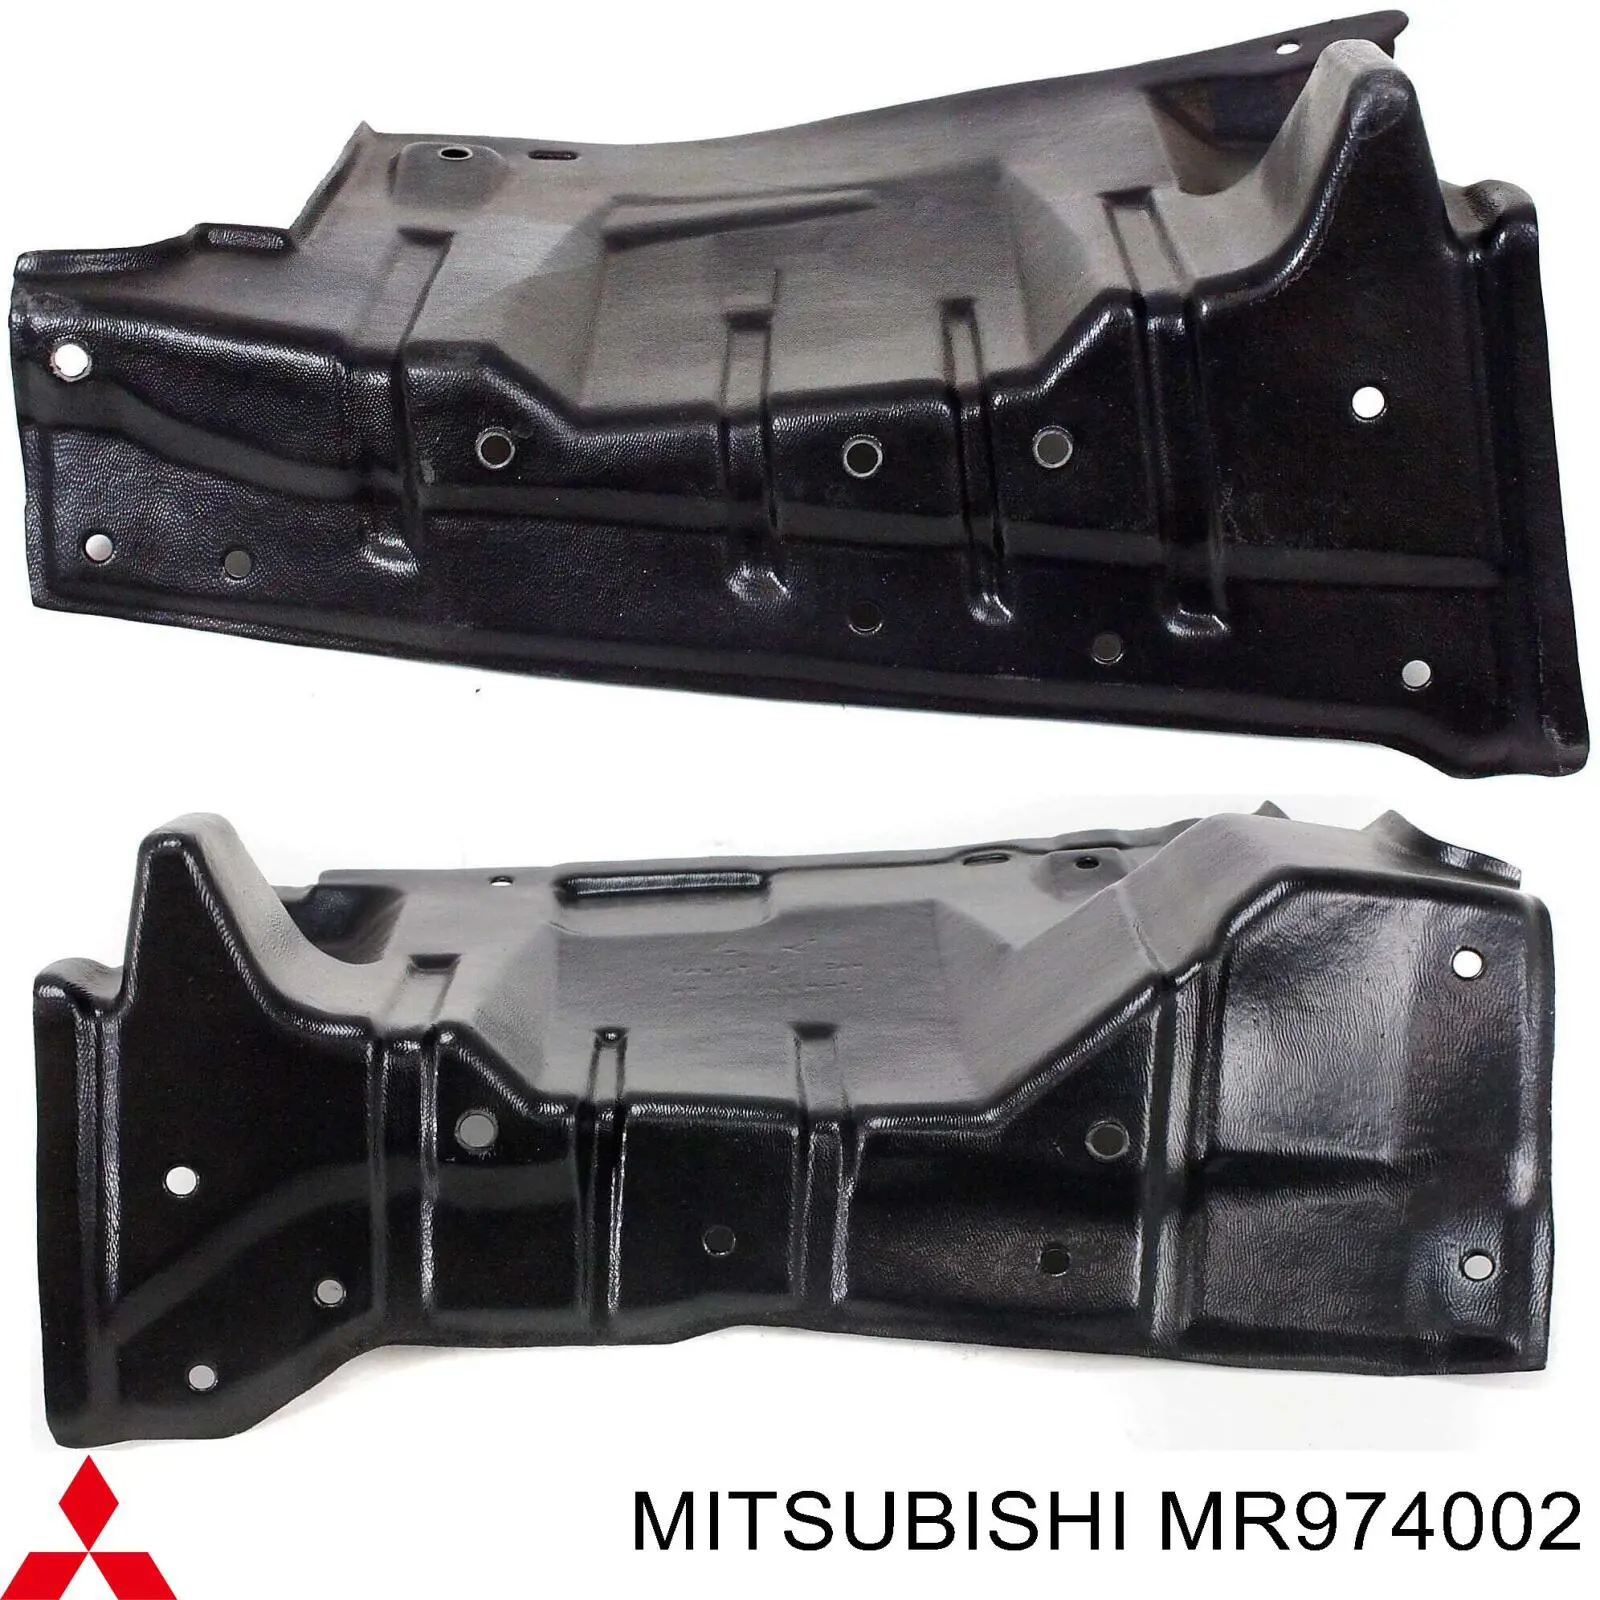 MR974002 Mitsubishi proteção de motor esquerdo